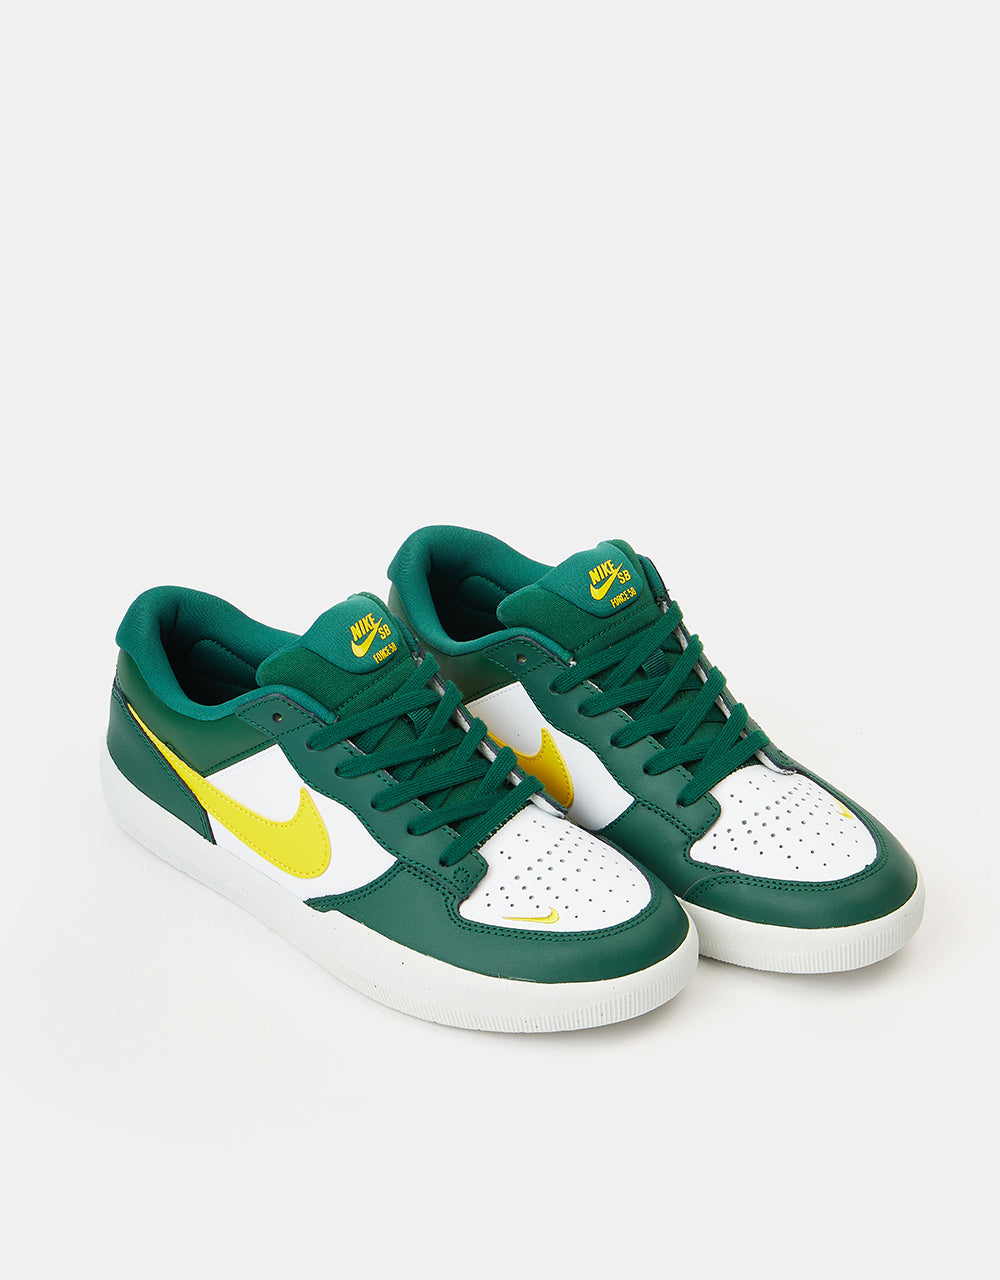 Nike SB Force 58 Premium Leather Skate Shoes - Gorge Green/Tour Yellow-White-Gorge Green-Summit White